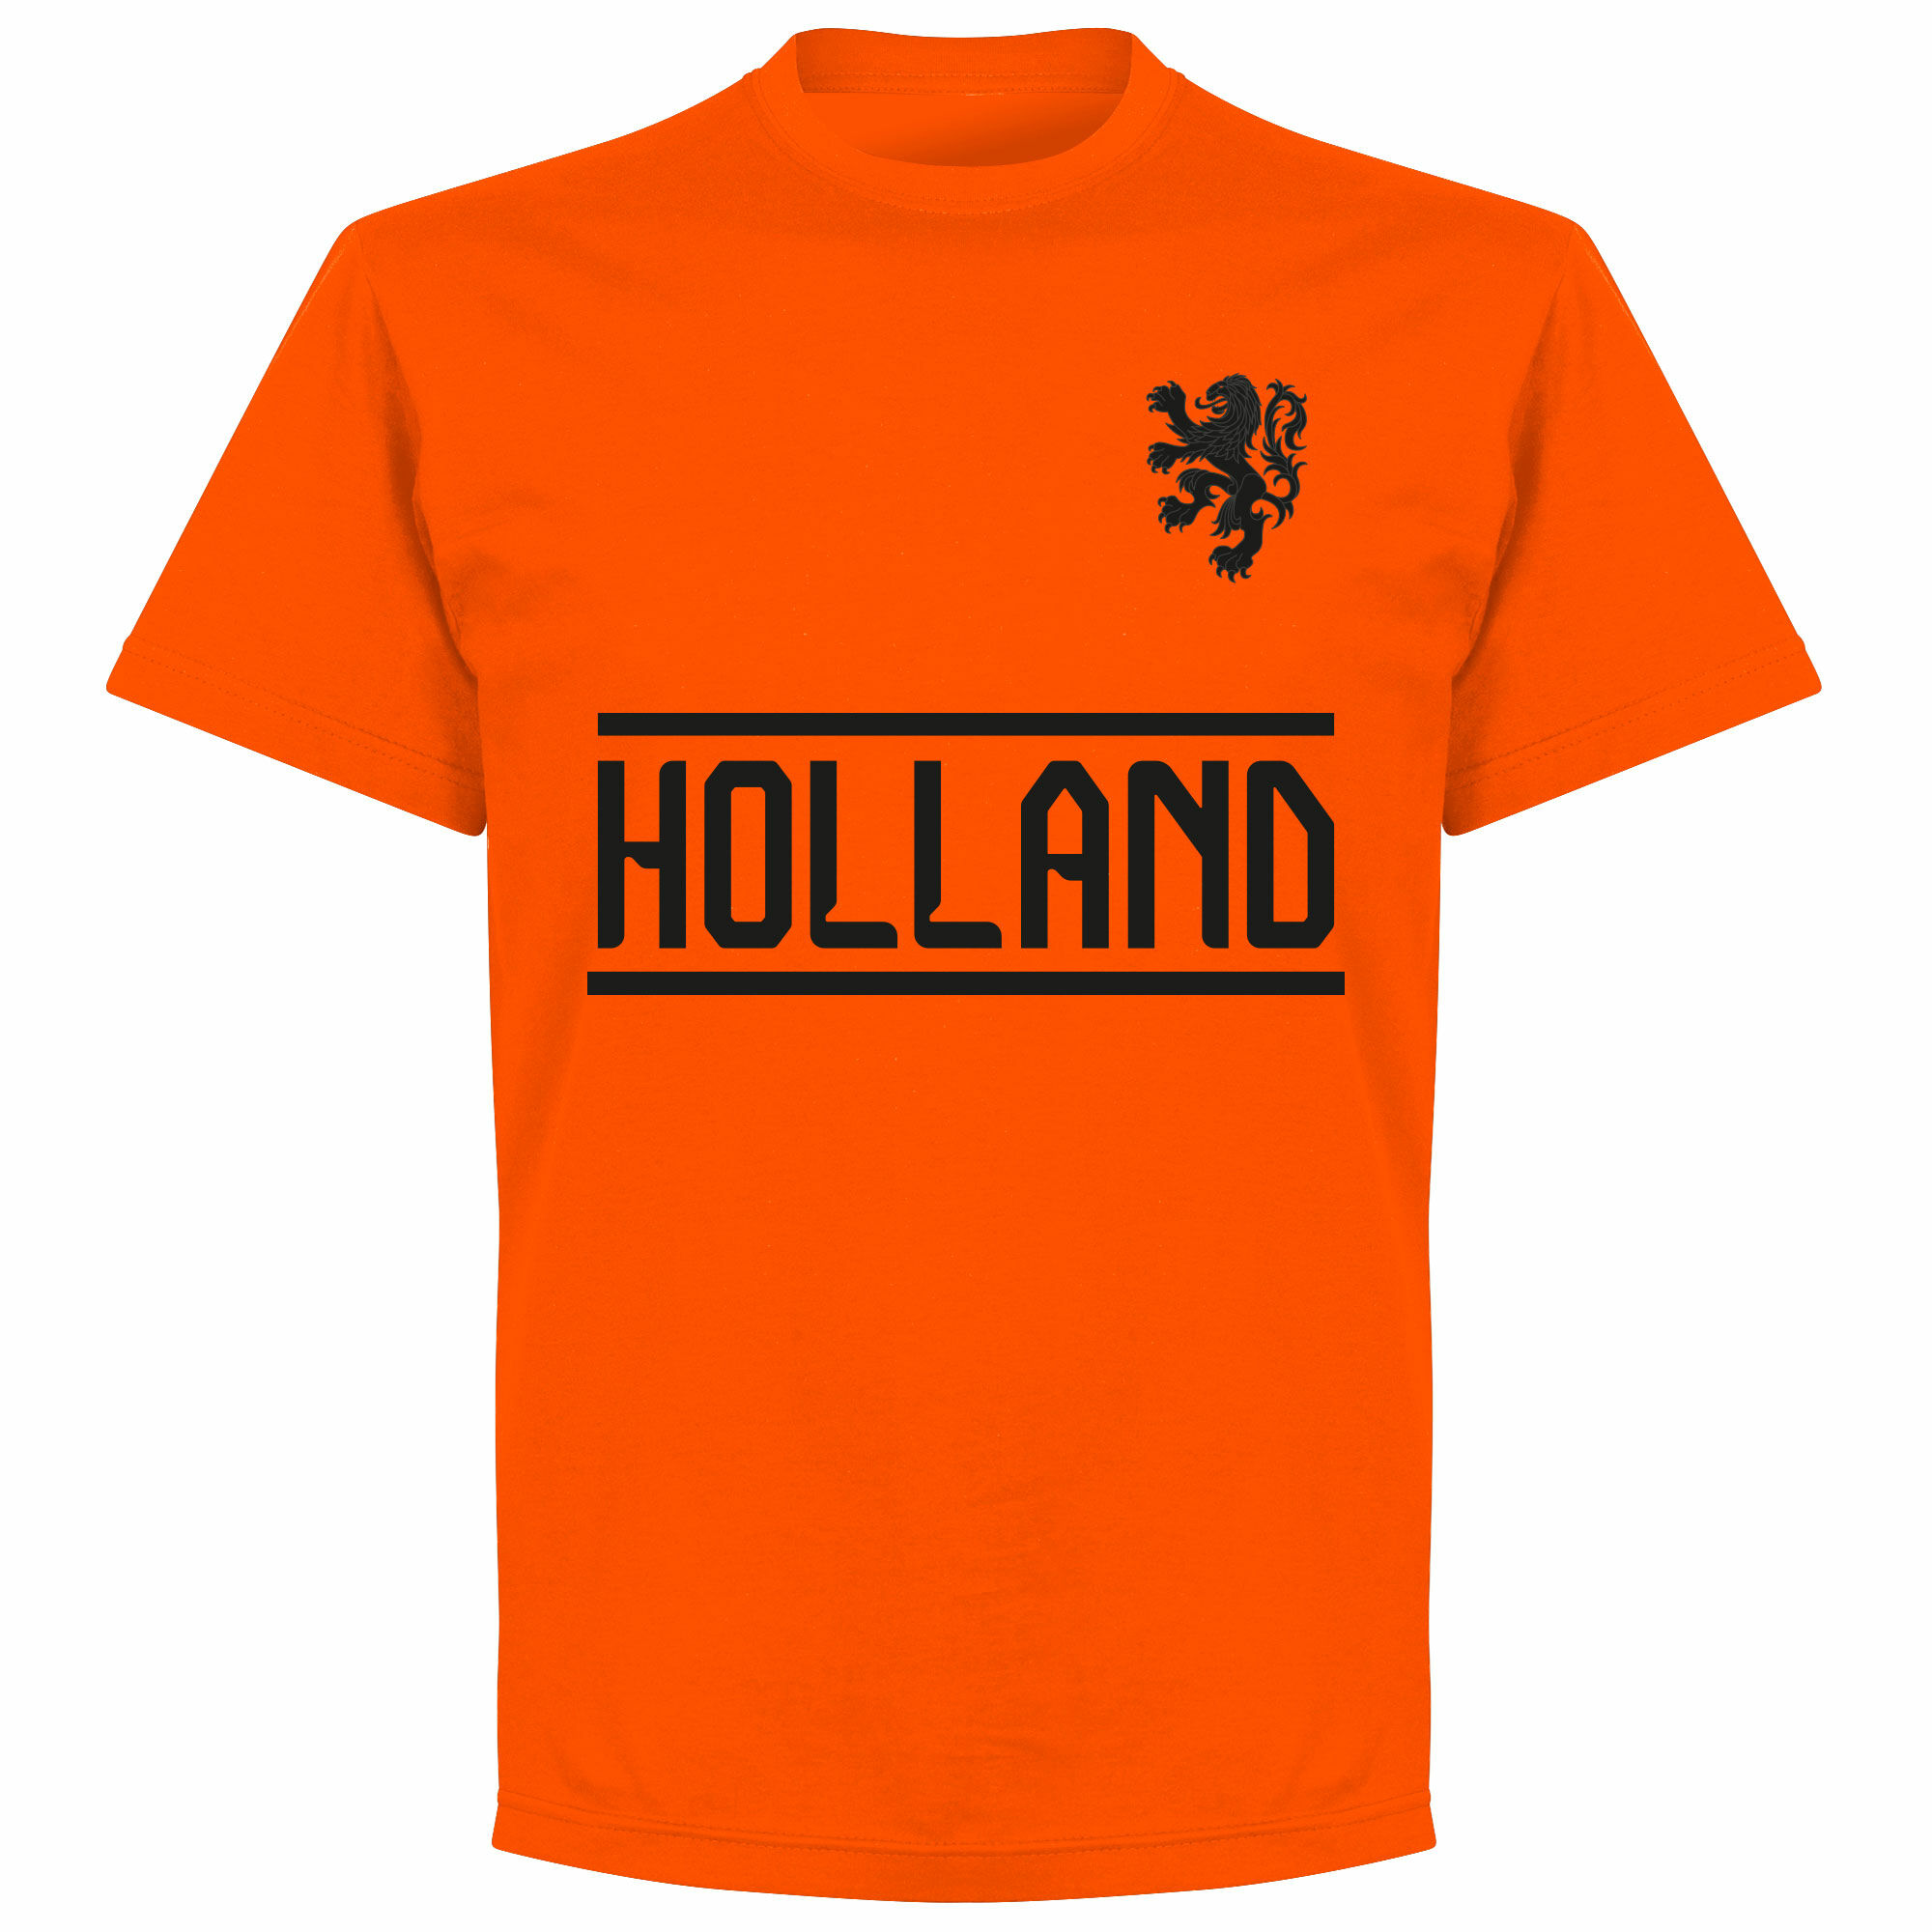 Nizozemí - Tričko dětské - oranžové